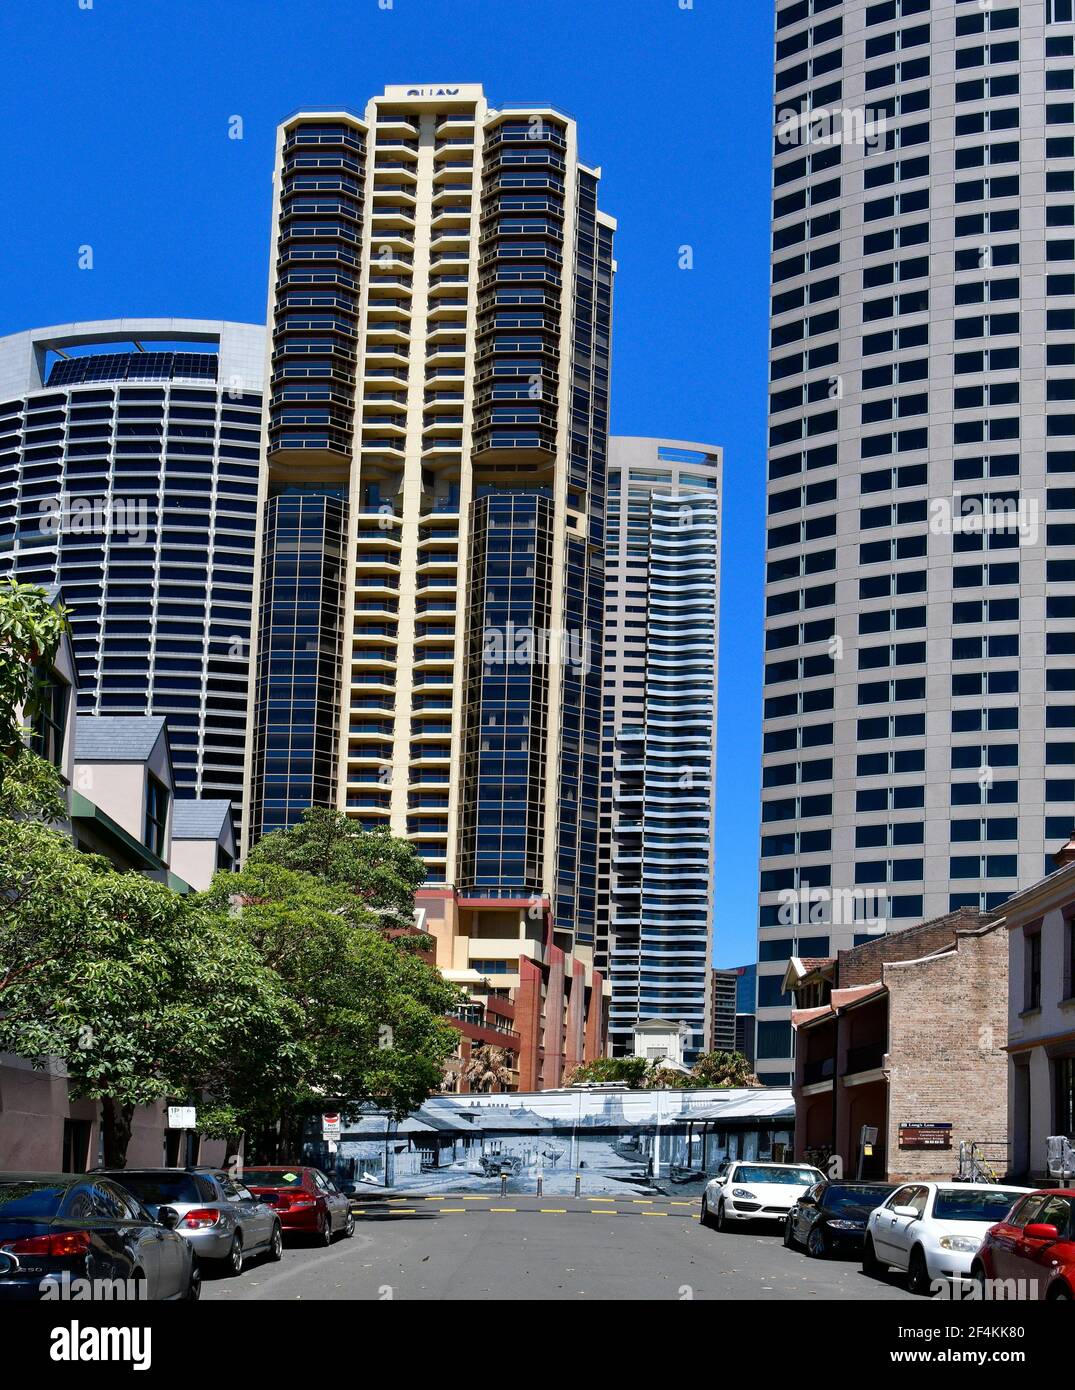 Sydney, Nouvelle-Galles du Sud, Australie - 30 octobre 2017 : fin morte avec des graffitis, des voitures et des bâtiments modernes dans Le quartier des Rocks Banque D'Images